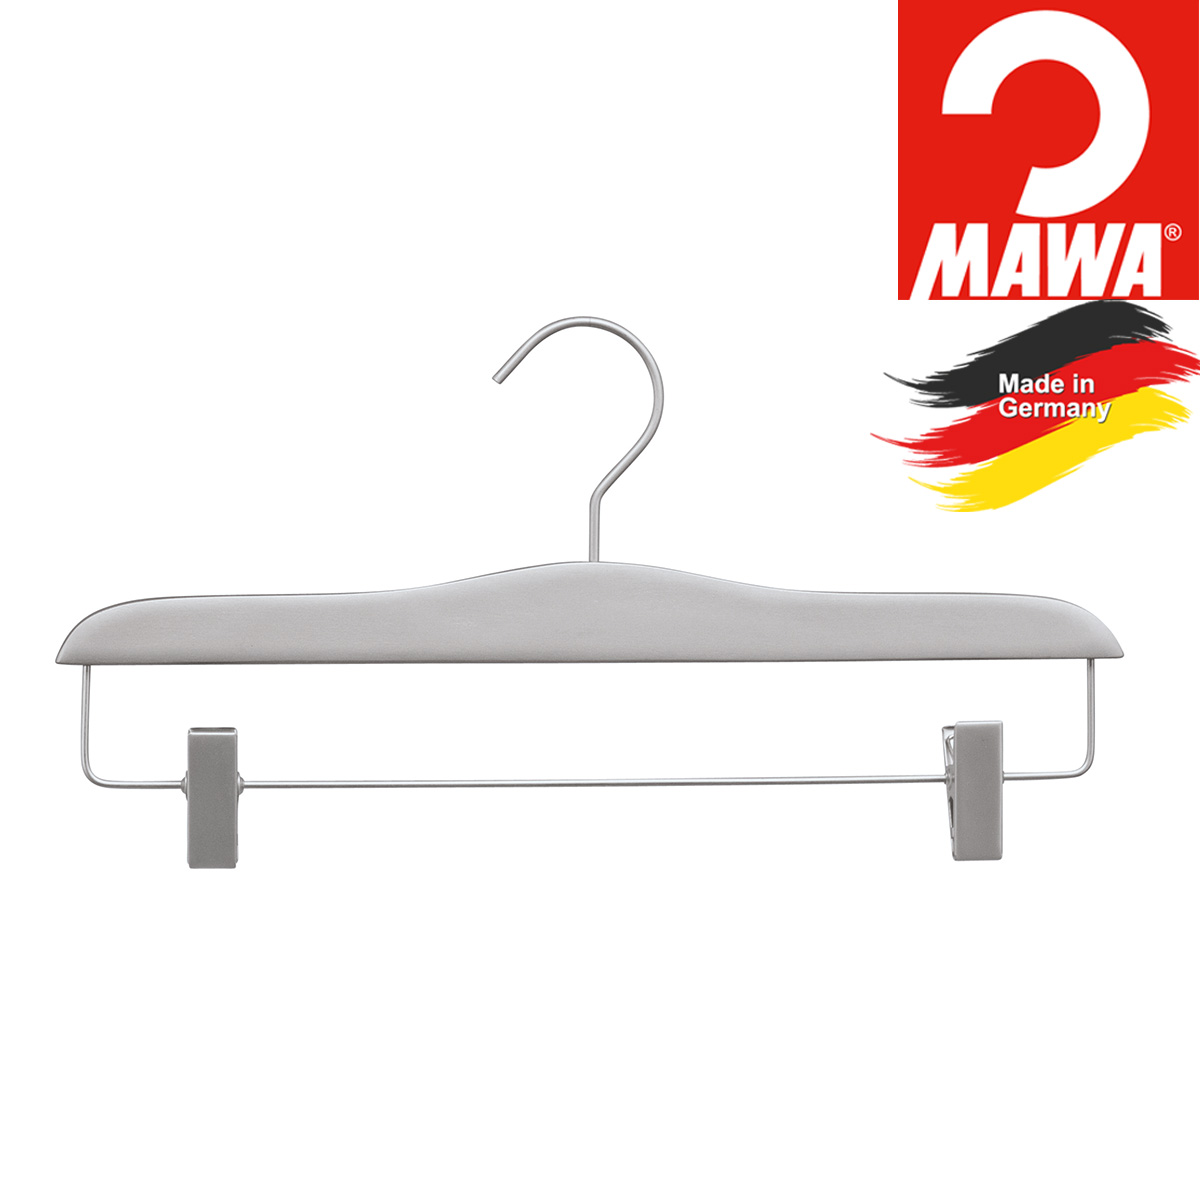 MAWA Hosenbügel